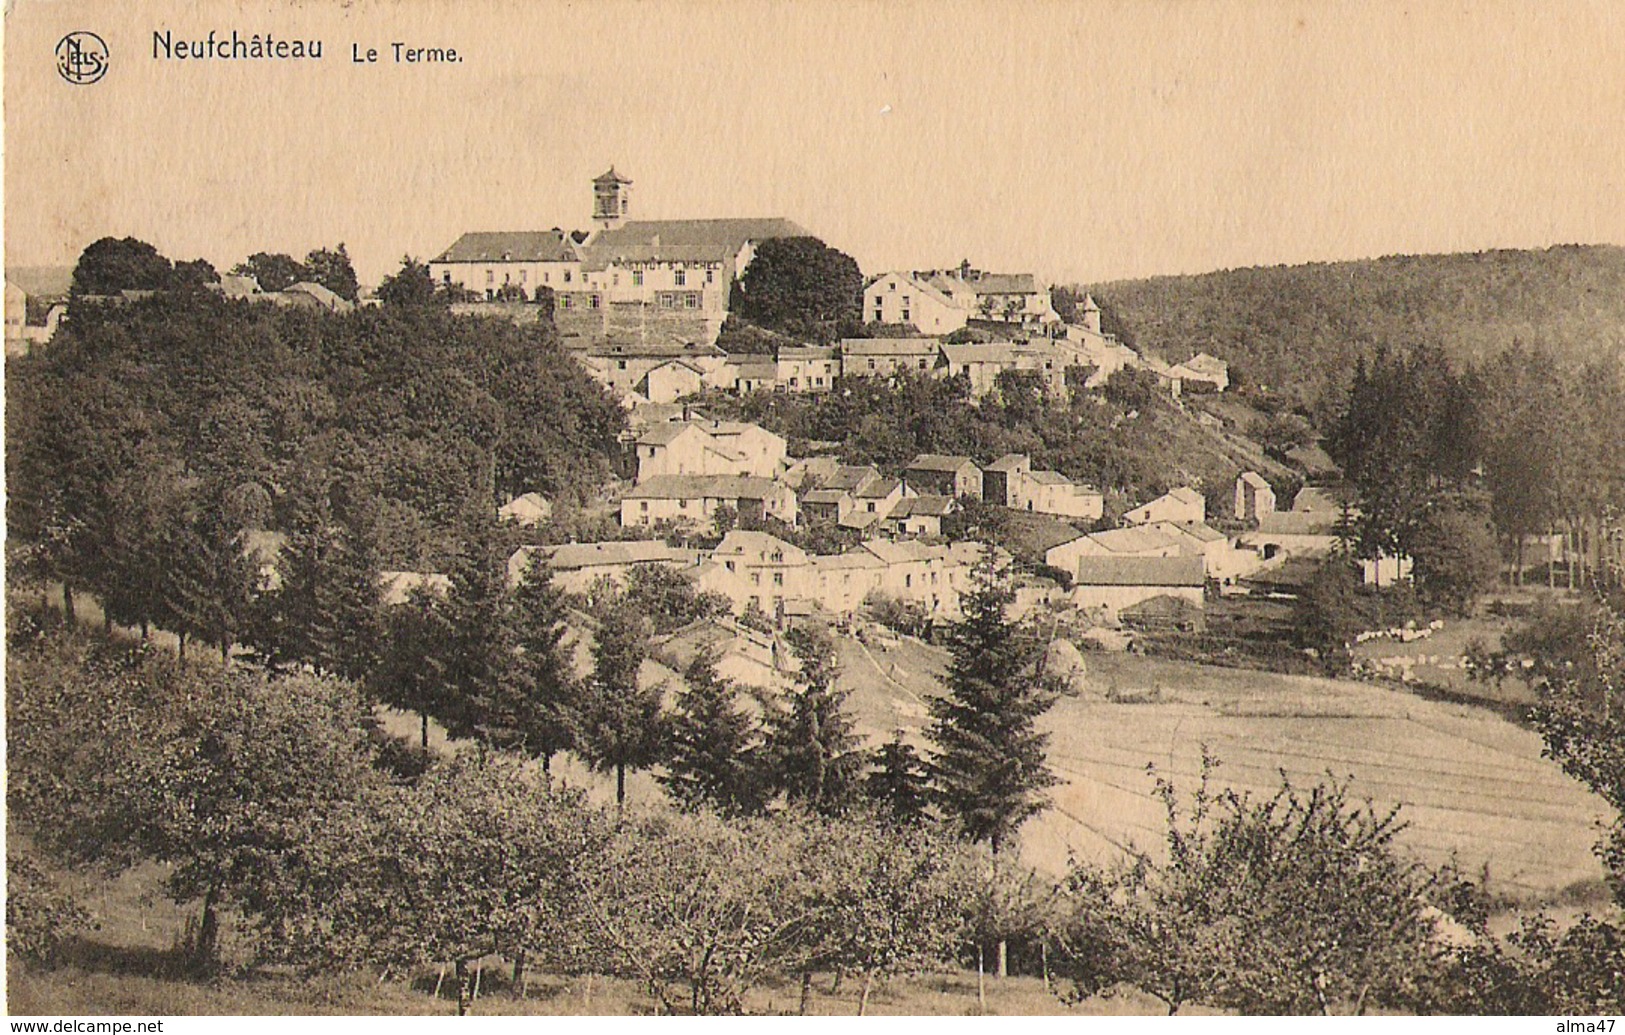 Neufchâteau - Le Terme - Circulé 1925 - Edit. Ch. Collin - Neufchâteau